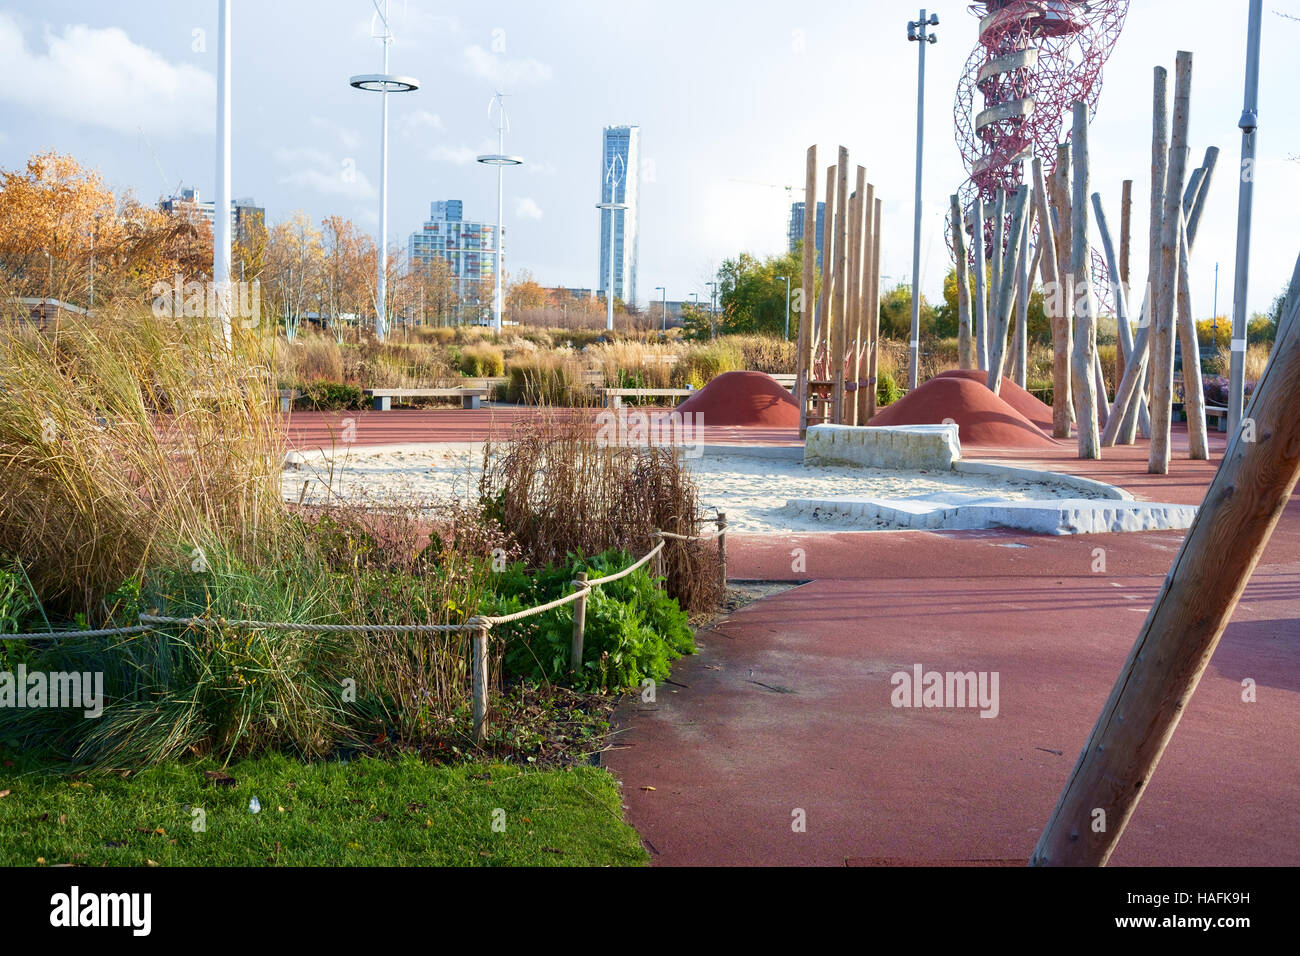 Leeren Sie Kinderspielplatz mit Sandkasten und Klettern Polen am Queen Elizabeth Olympic Park, Stratford, London, im Winter Stockfoto